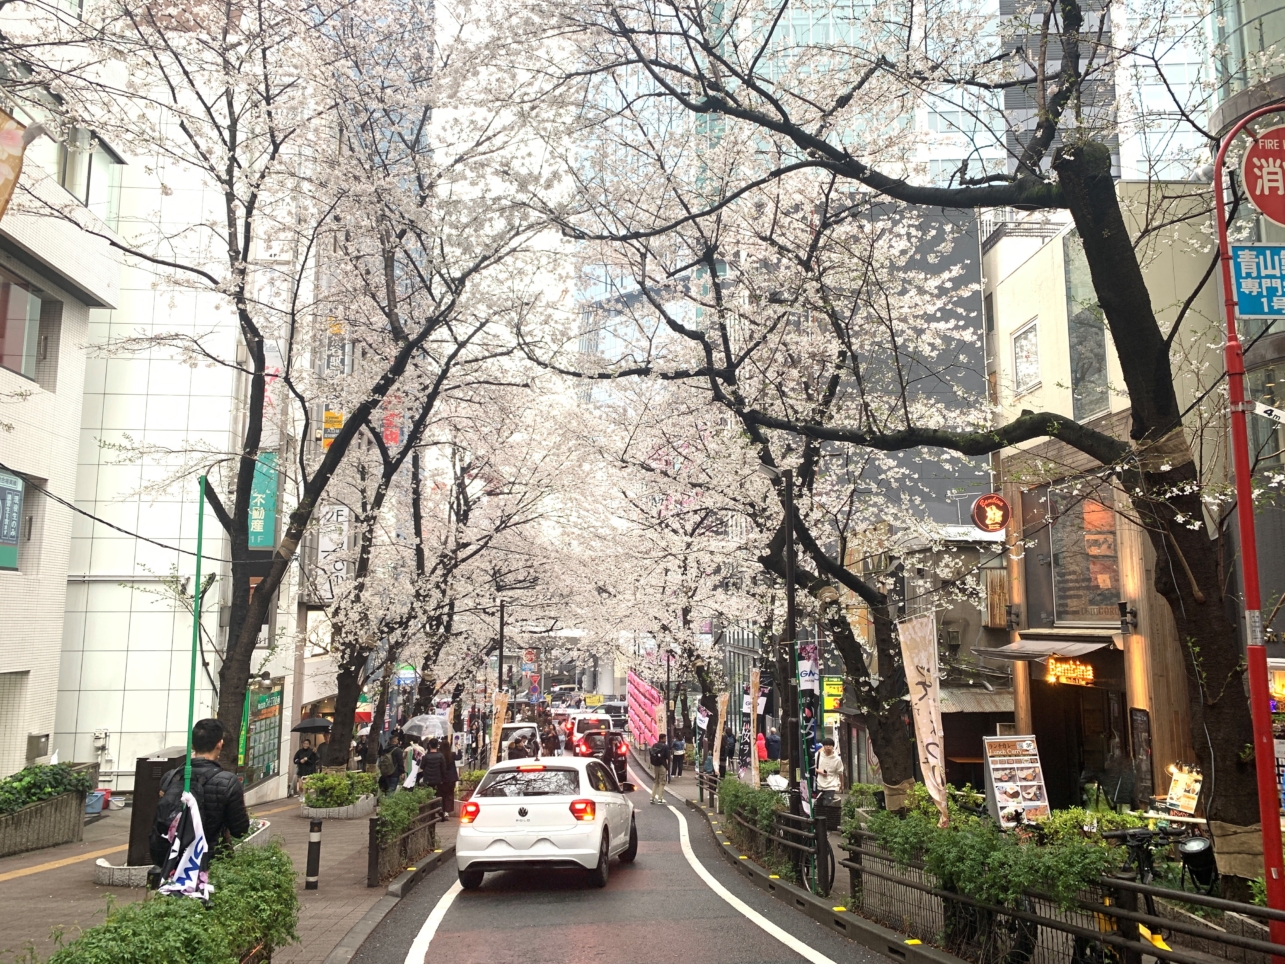 🌸サクラ並木がきれいな渋谷の『サクラ坂』🌸